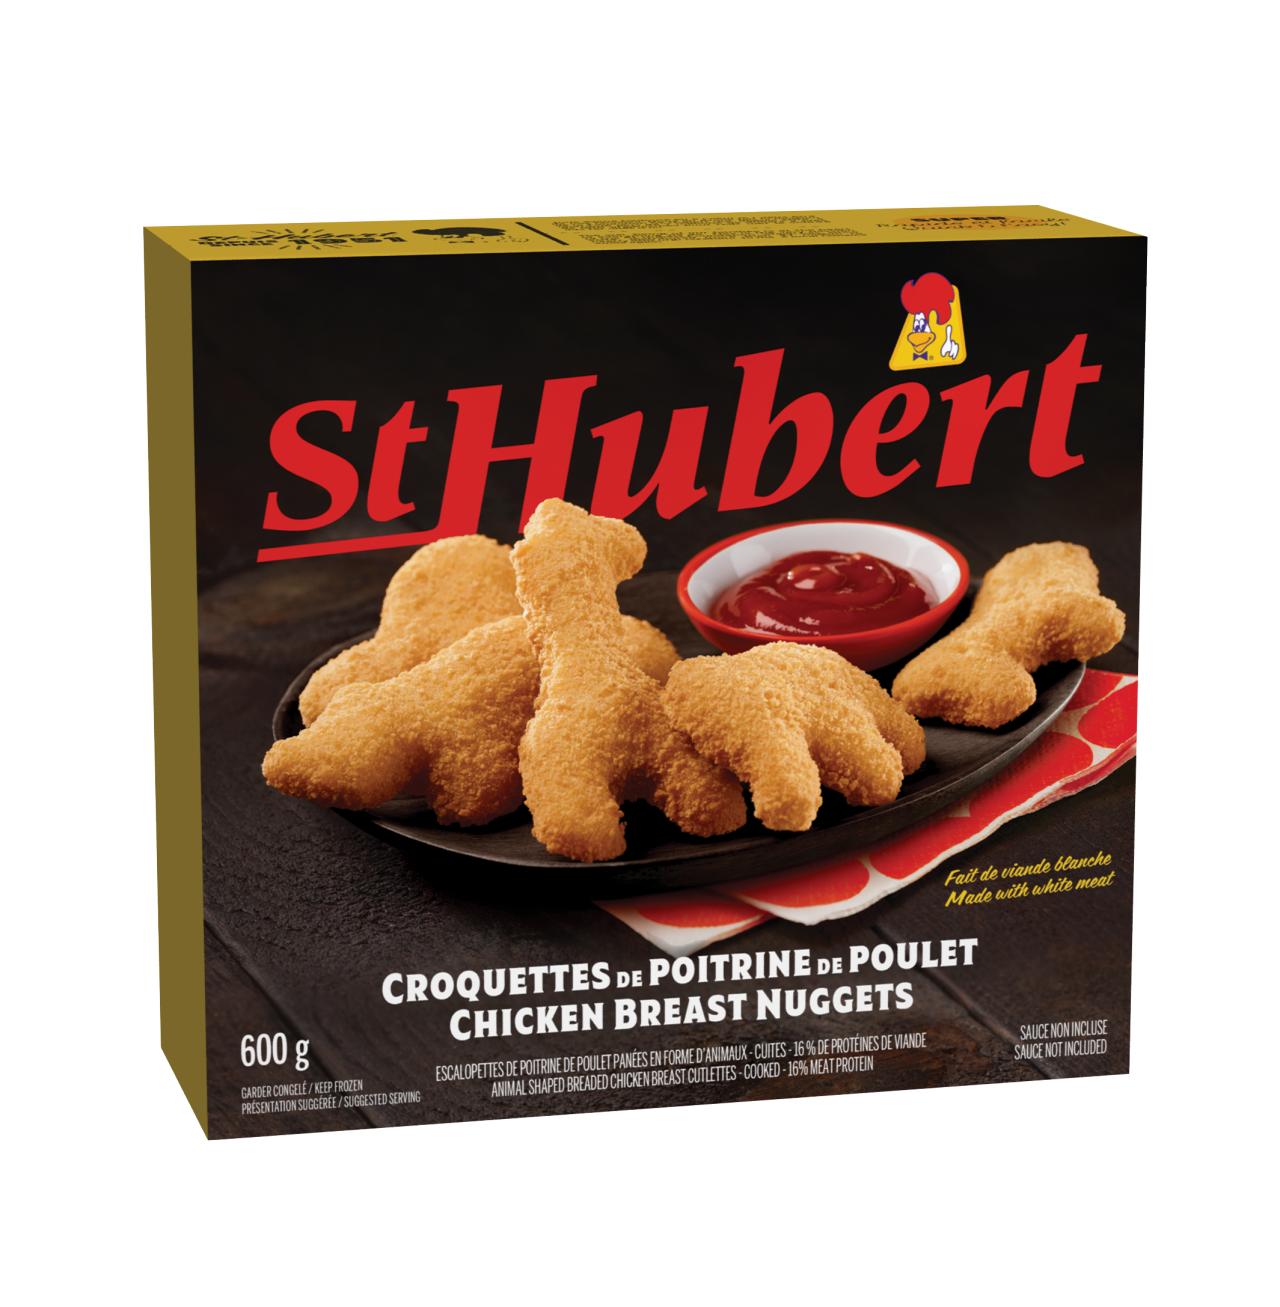 St-Hubert chicken breast nuggets